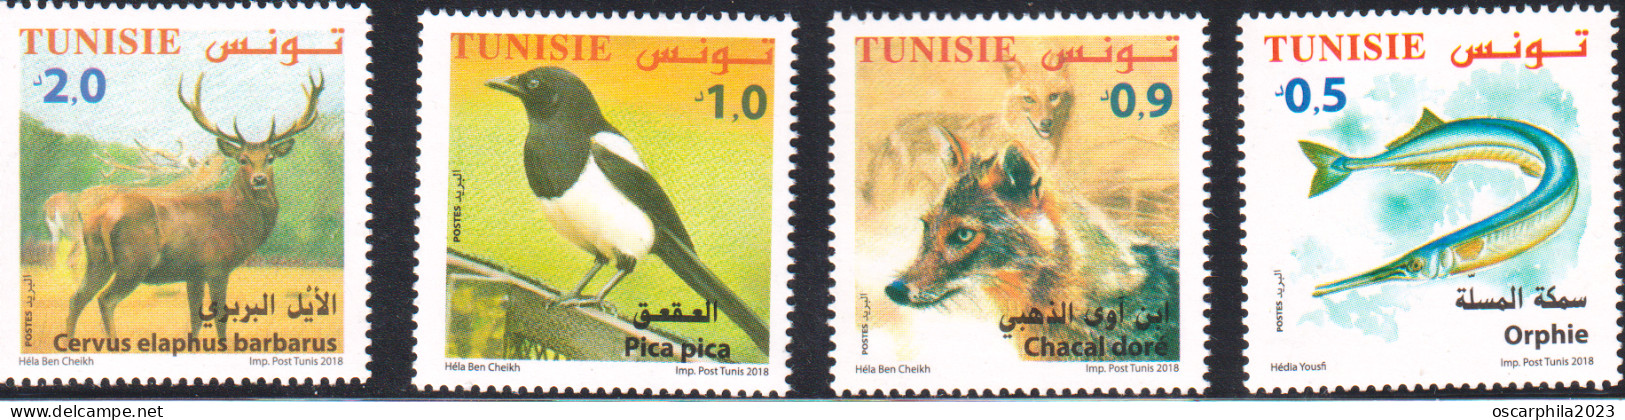 2018-Tunisie- Faune Terrestre, Maritime-Orphie, Chacal Doré, Pica Pica, Cervus Elaphus-série Complète 4V+FDC -MNH***** - Climbing Birds